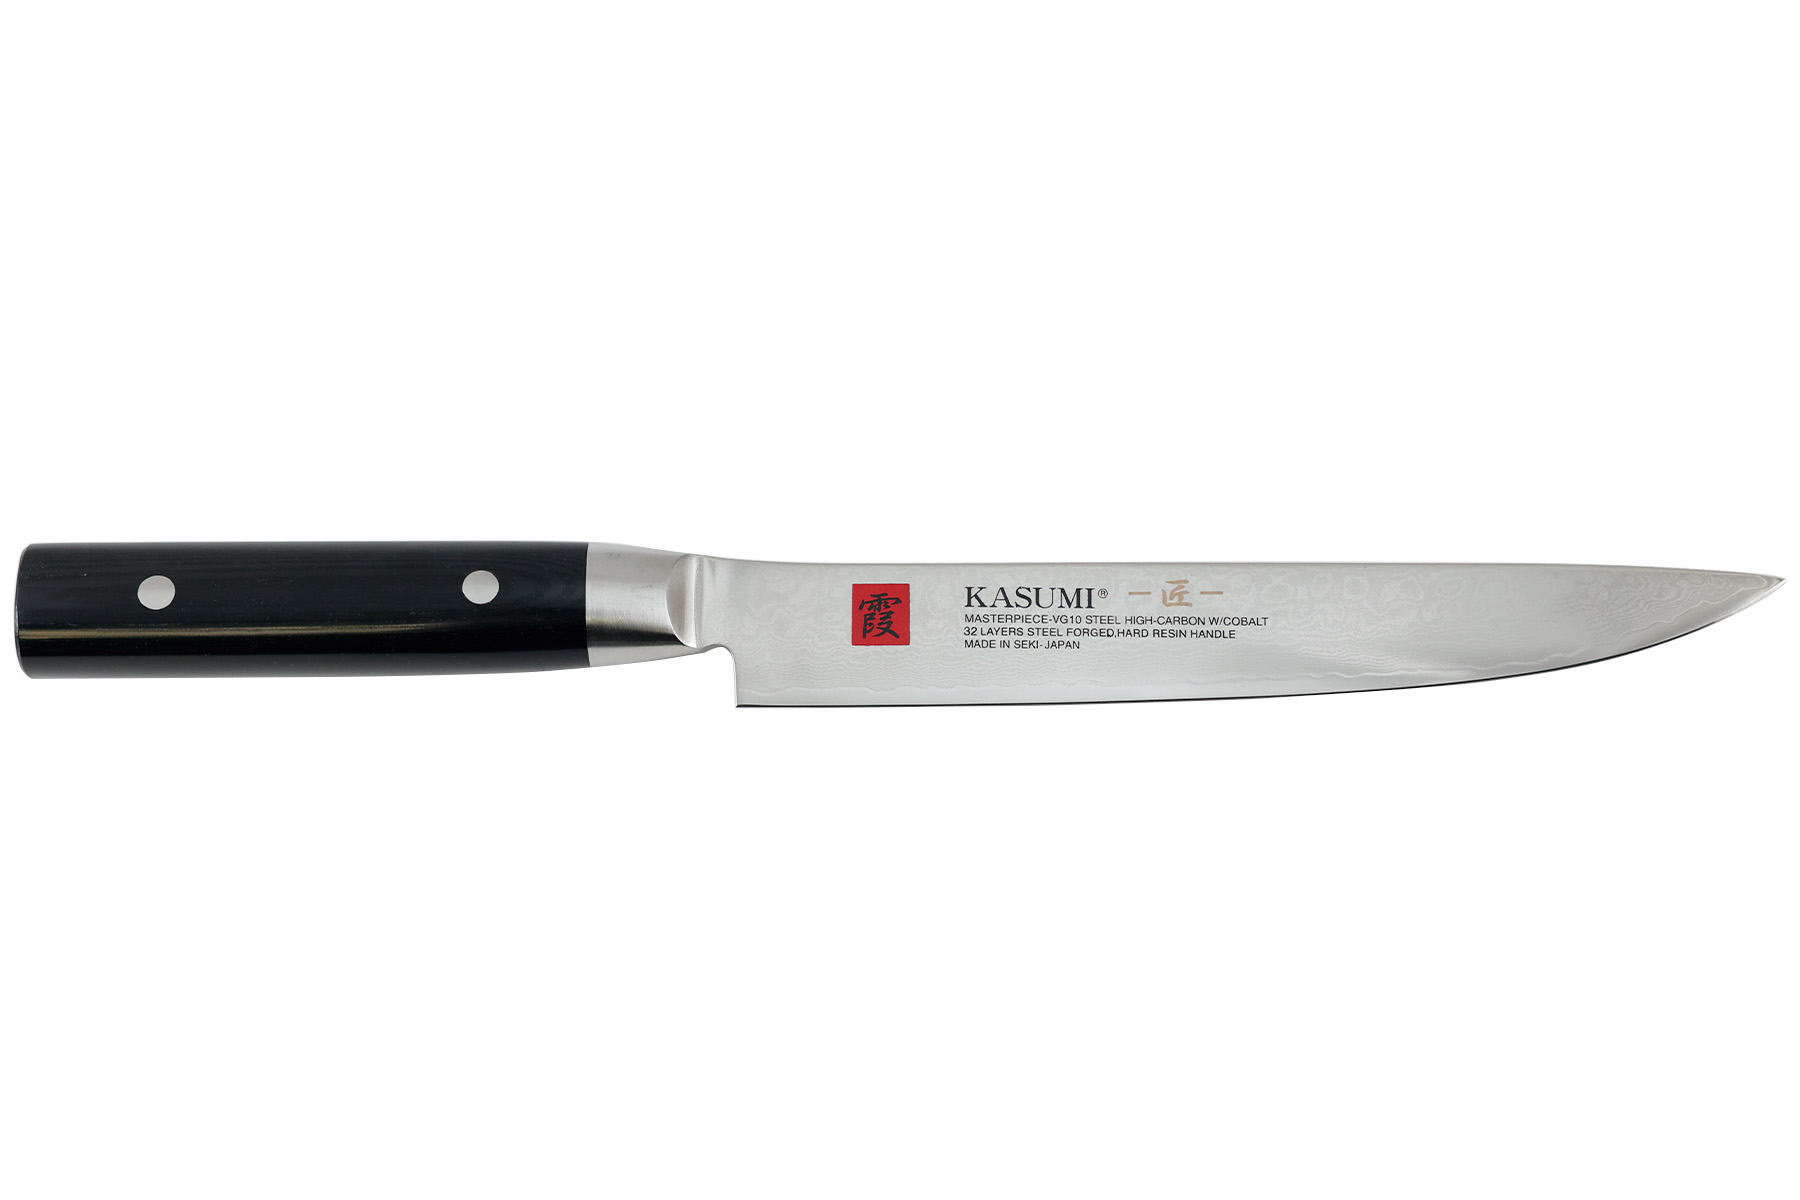 Couteau japonais Kasumi Masterpiece - Couteau à trancher 20 cm